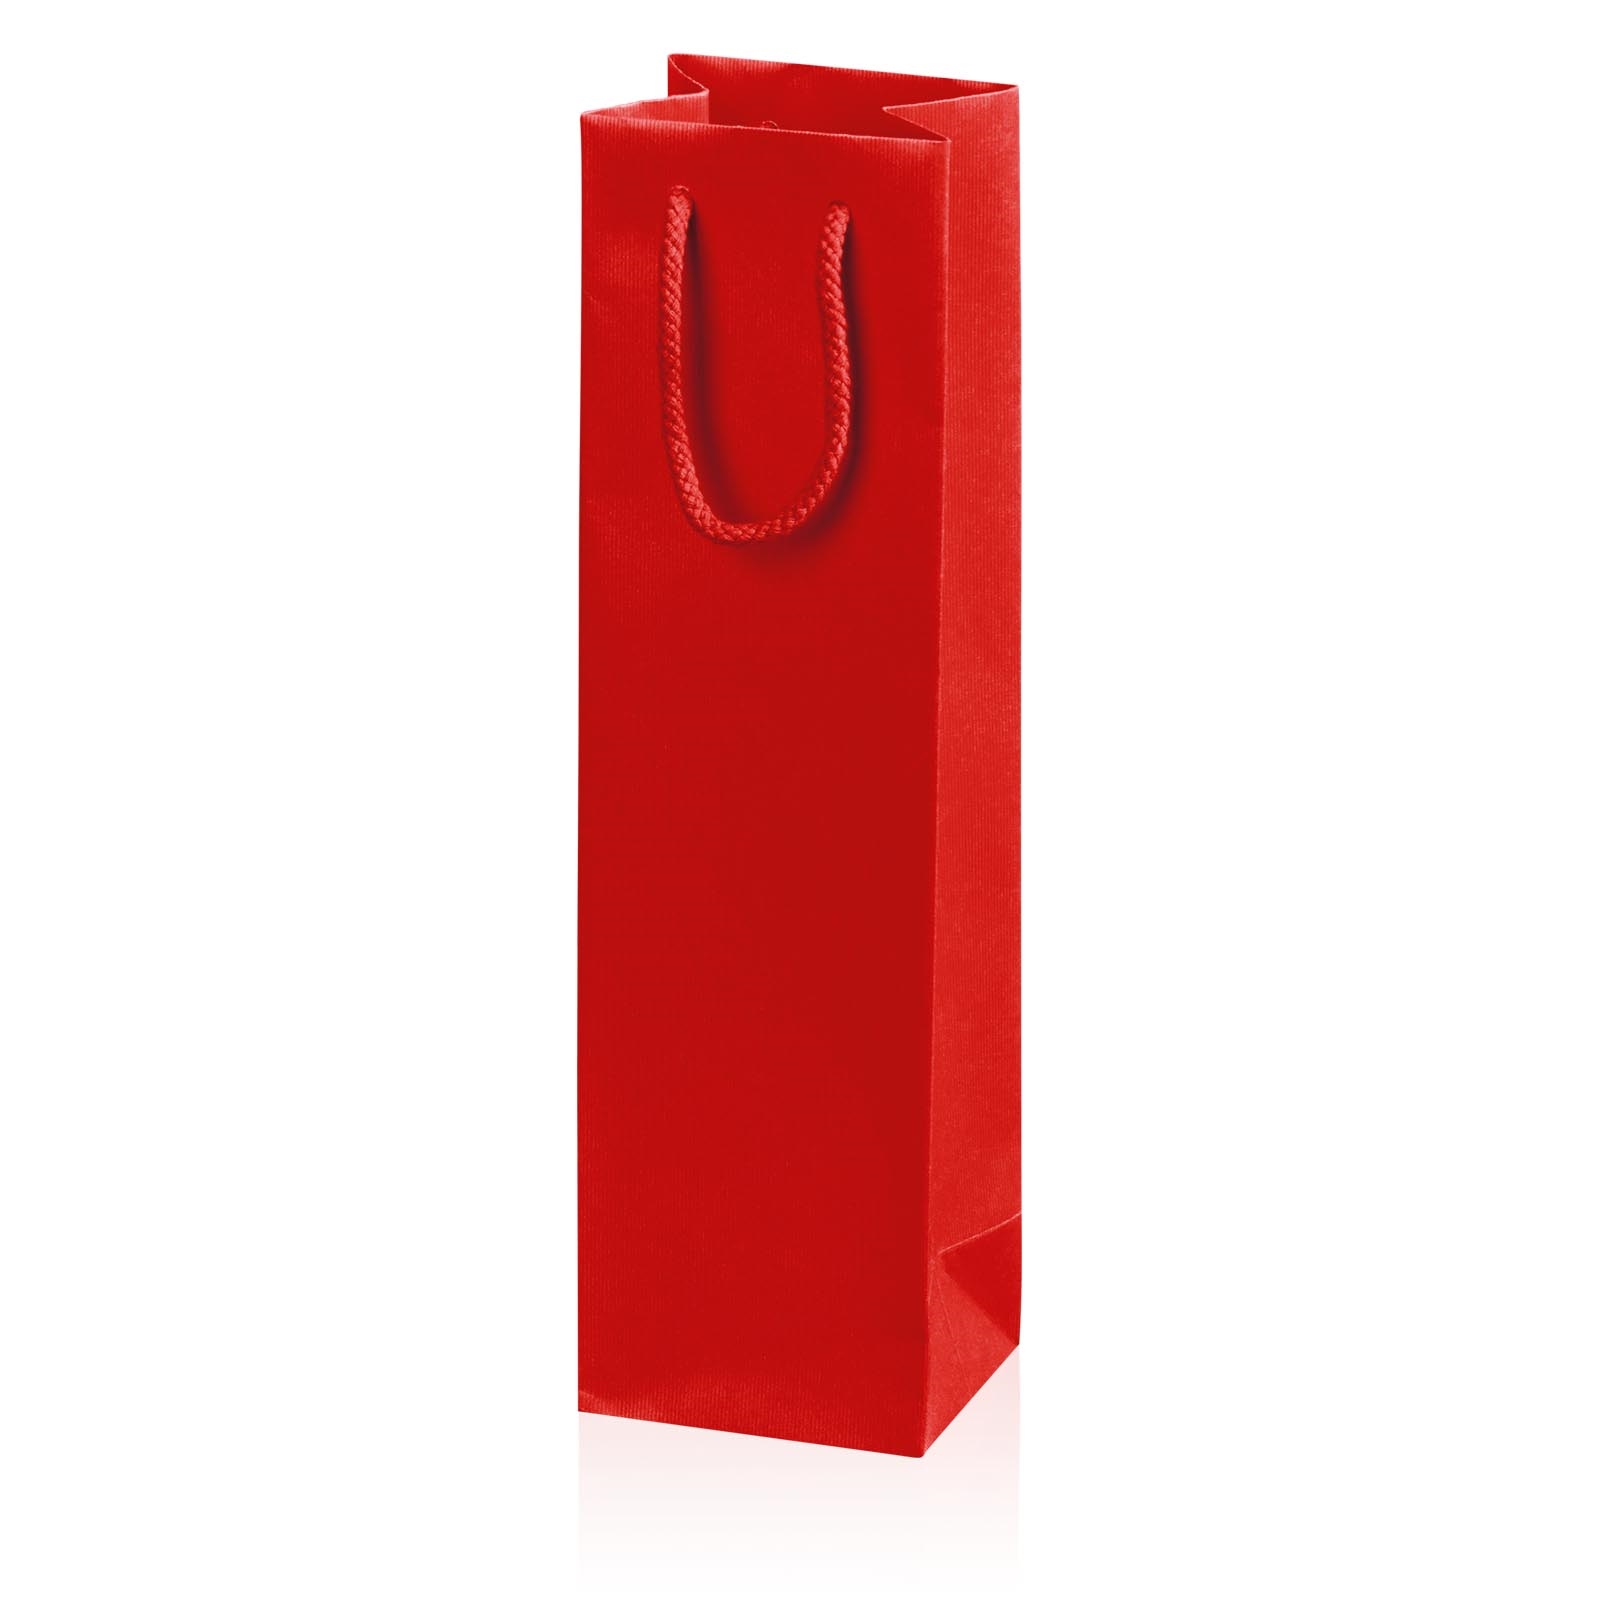 Afbeelding van Pak à 20 1 fles draagtas 10+8,5x36 cm rood (uc)